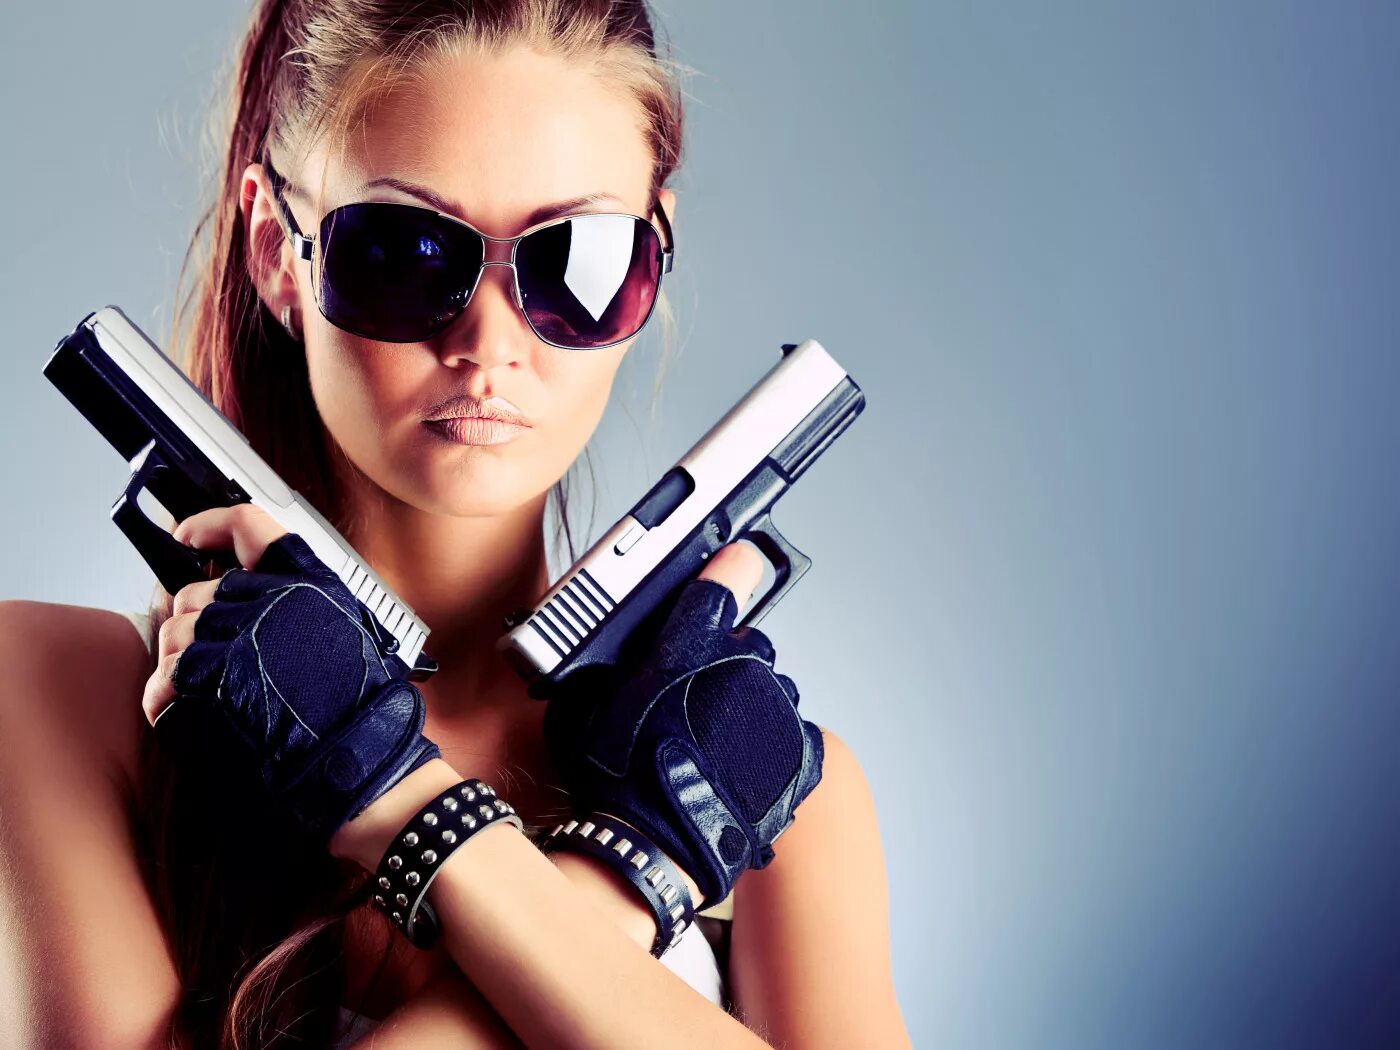 Фото на аватарку в контакте. Девушка с пистолетом. Крутая девушка. Крутые девочки. Красивая девушка с пистолетом.